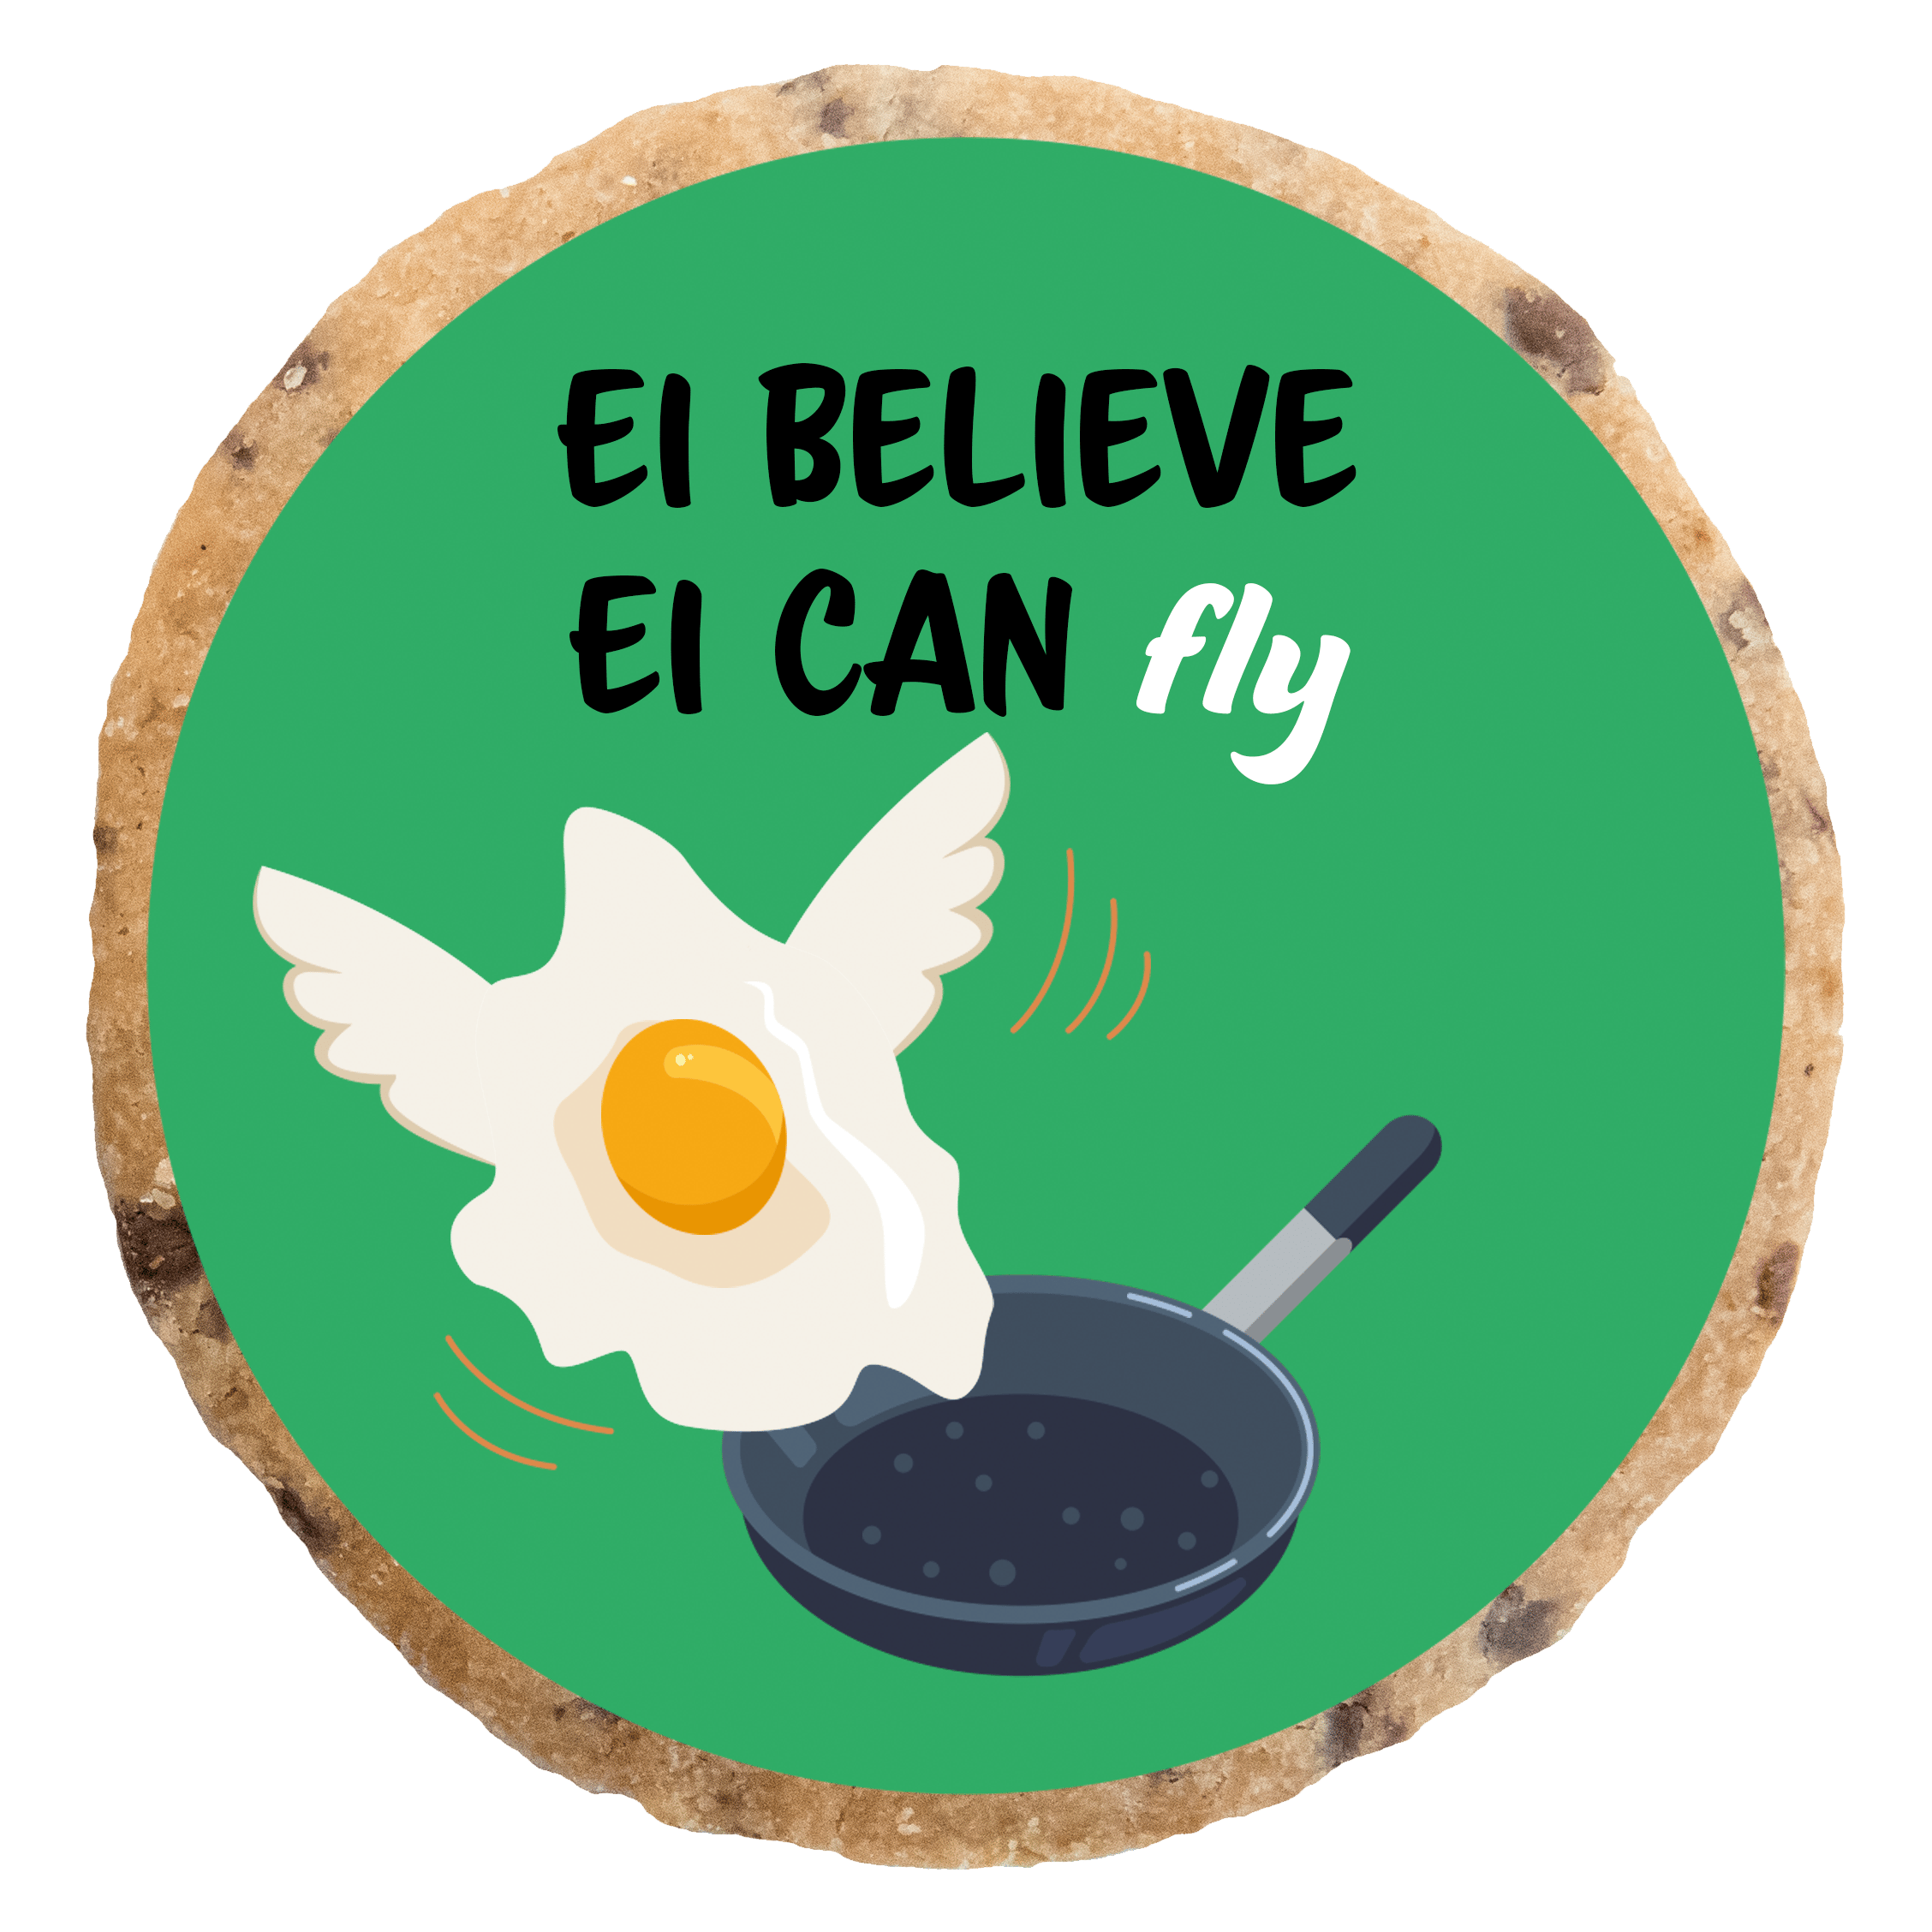 "Ei believe Ei can fly" MotivKEKS 